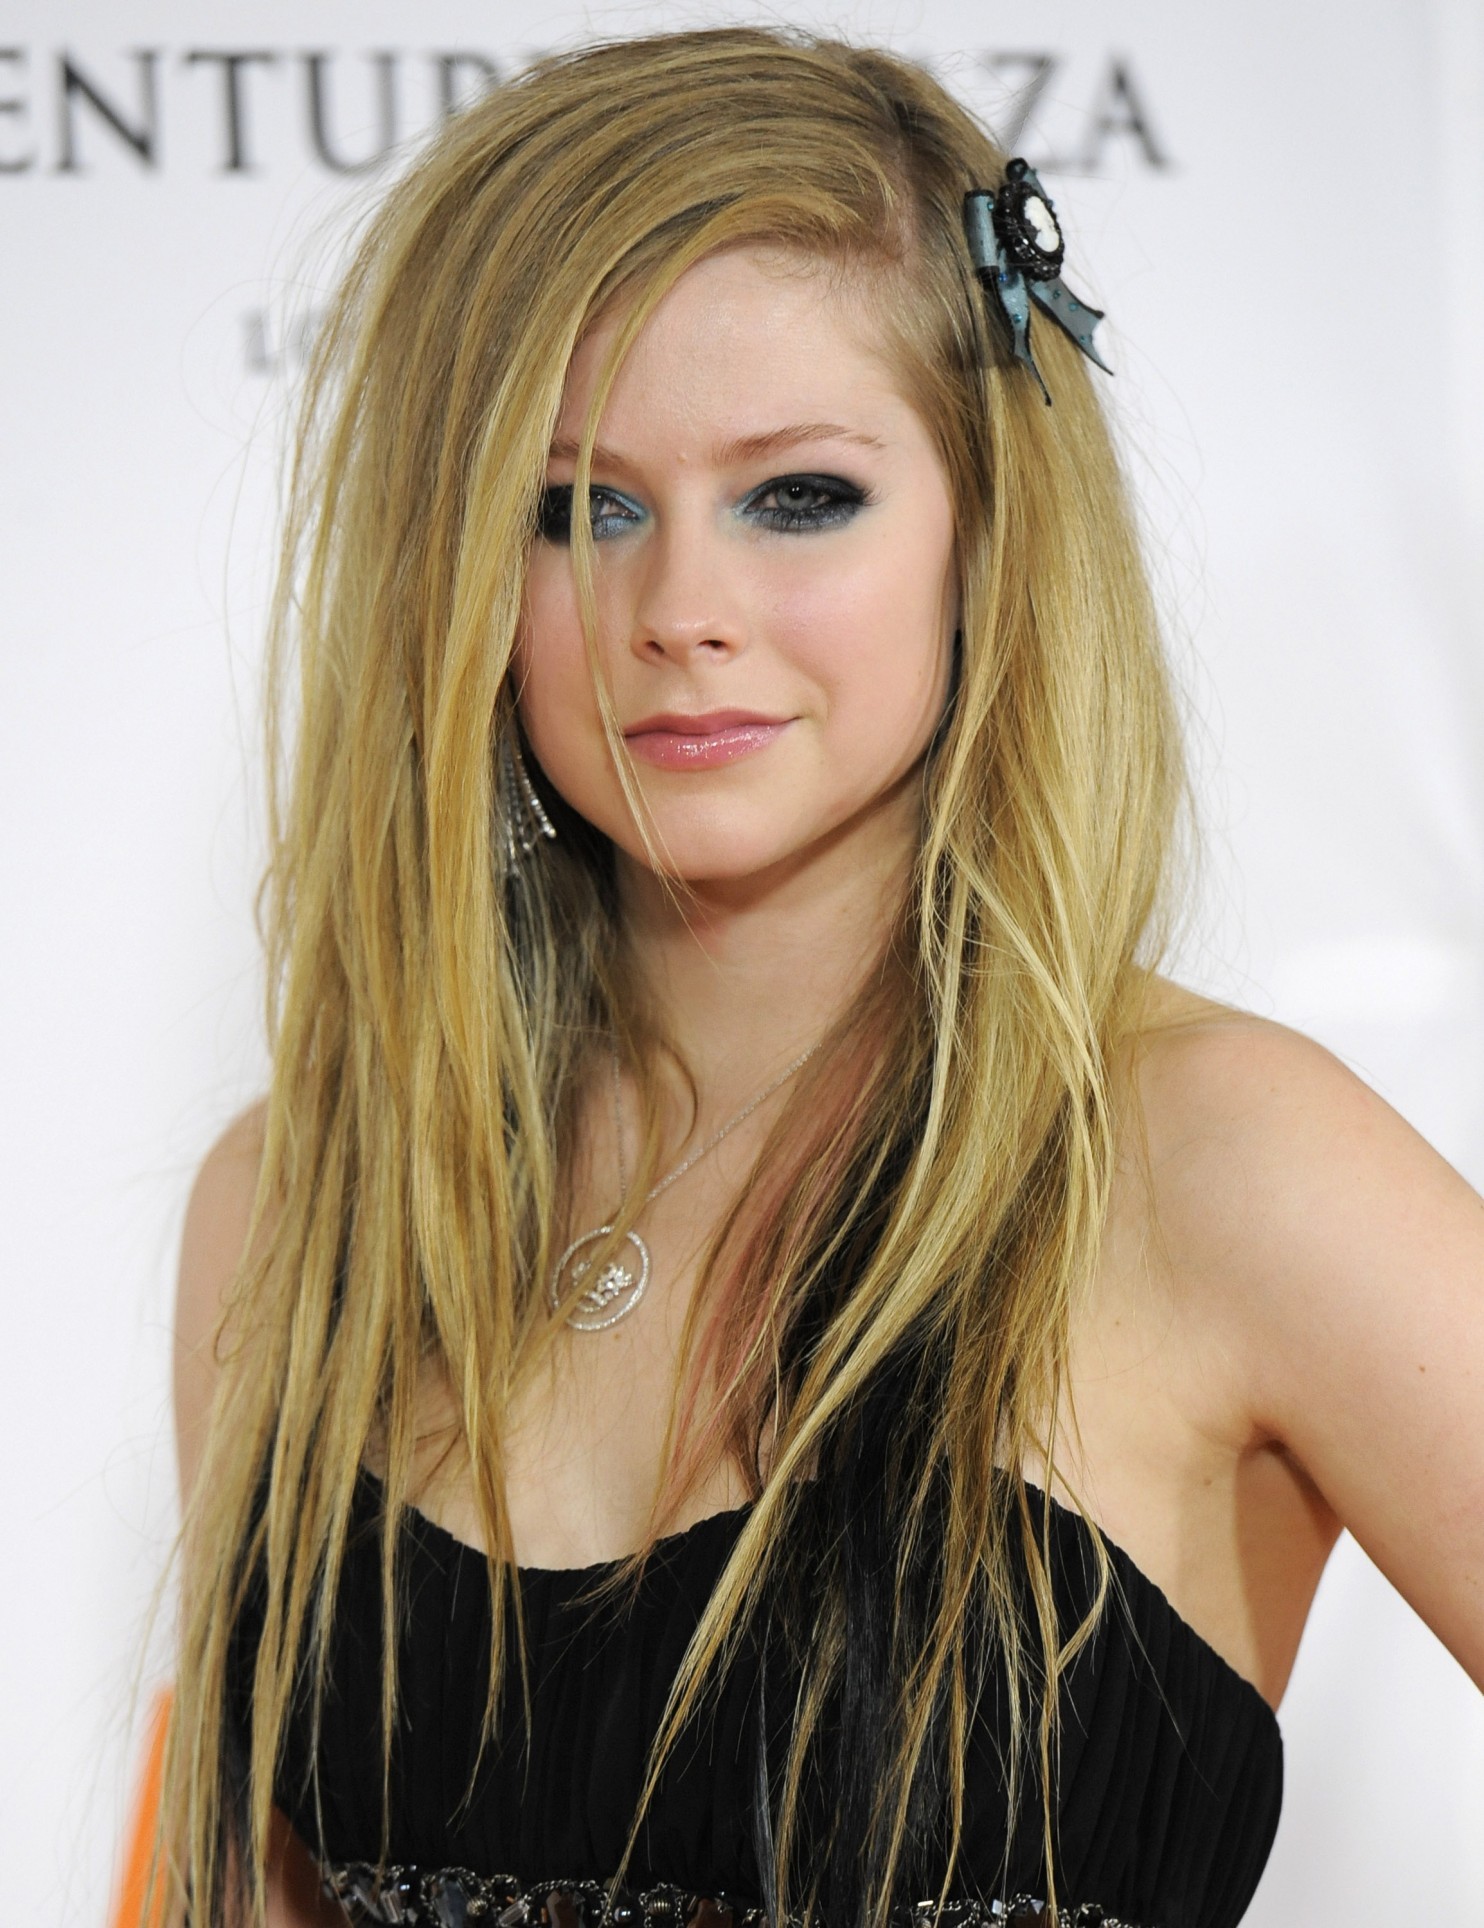 Avril Lavigne Signo del Zodiaco Libra